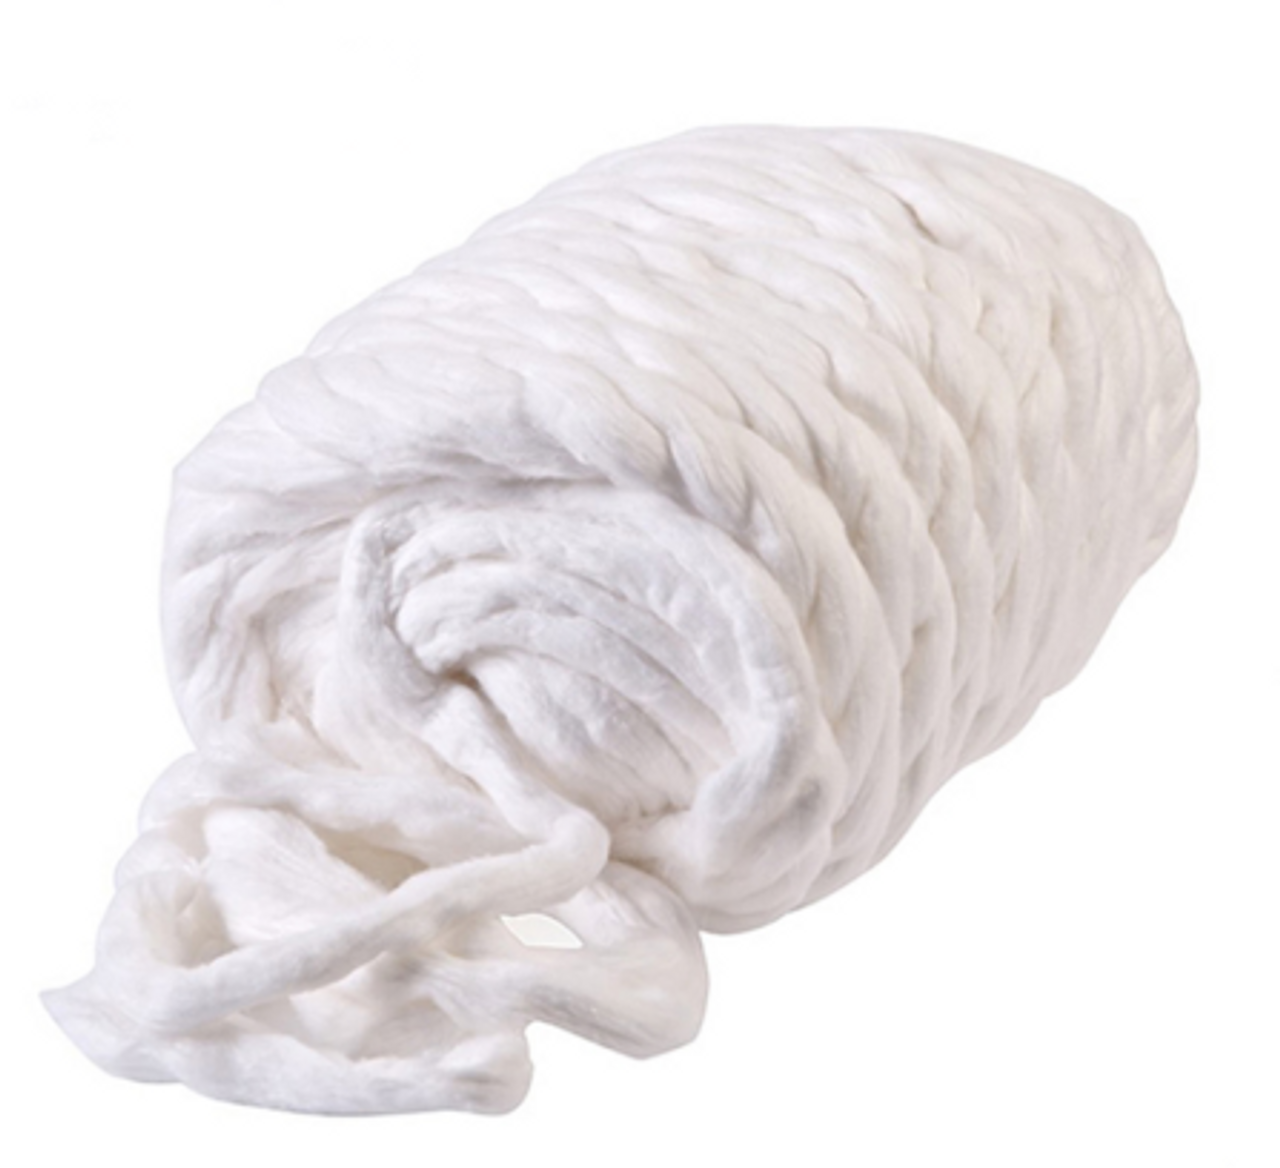 Cotton (12 lbs/bag)